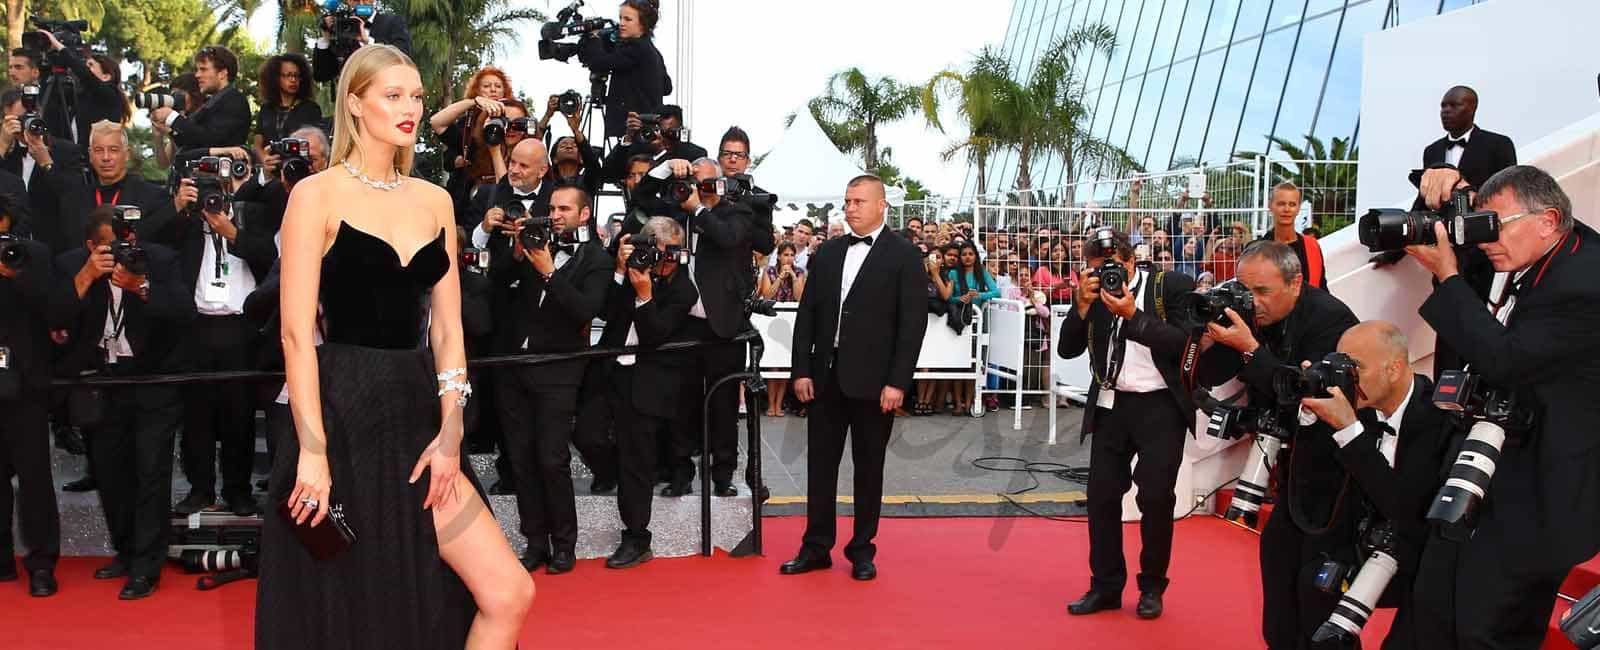 Festival de Cine de Cannes: Robert de Niro y Ana de Armas comparten alfombra con las top models